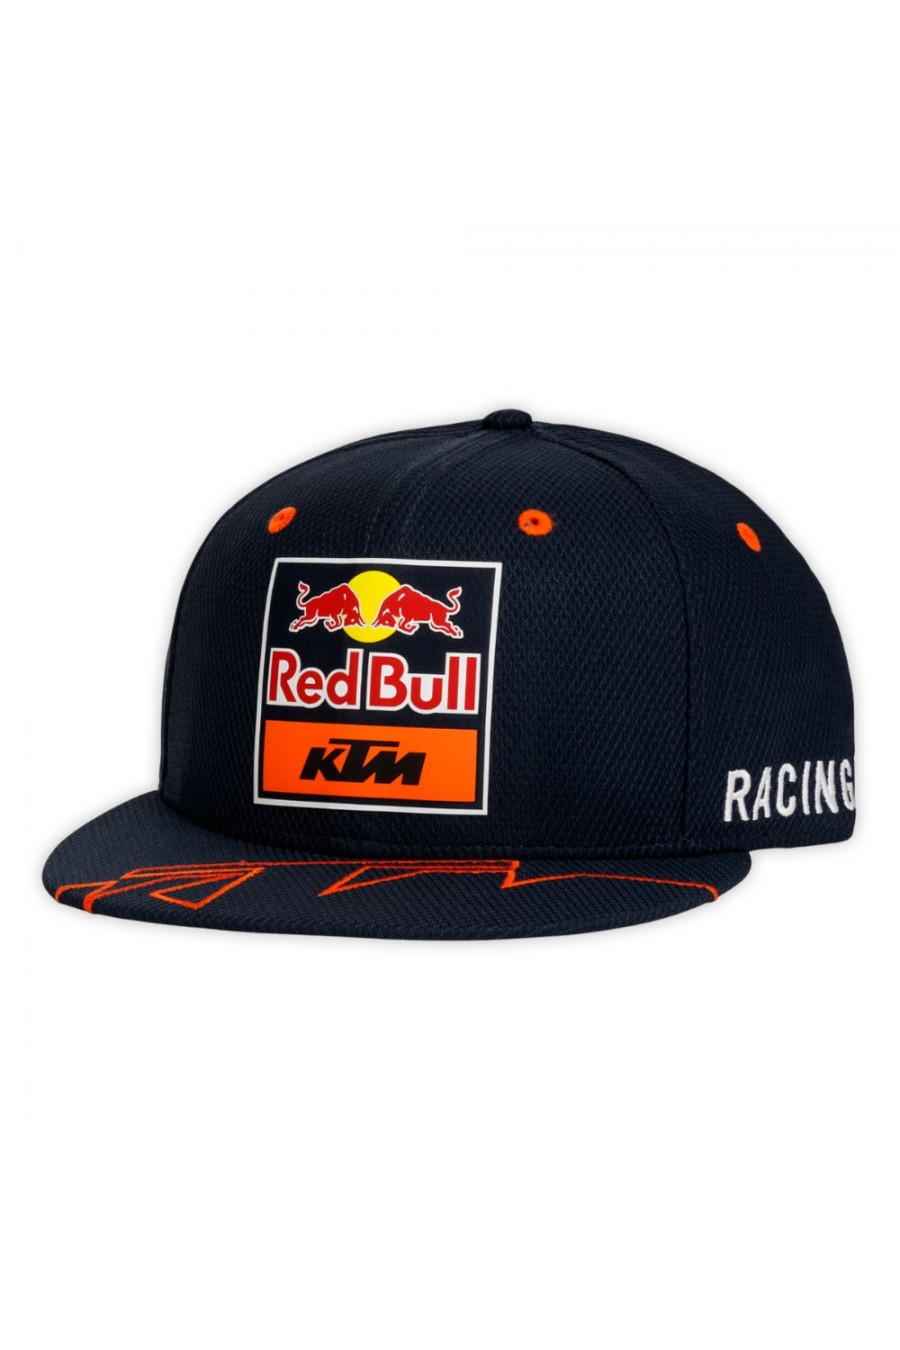 Red Bull KTM Racing Team Schiebermütze